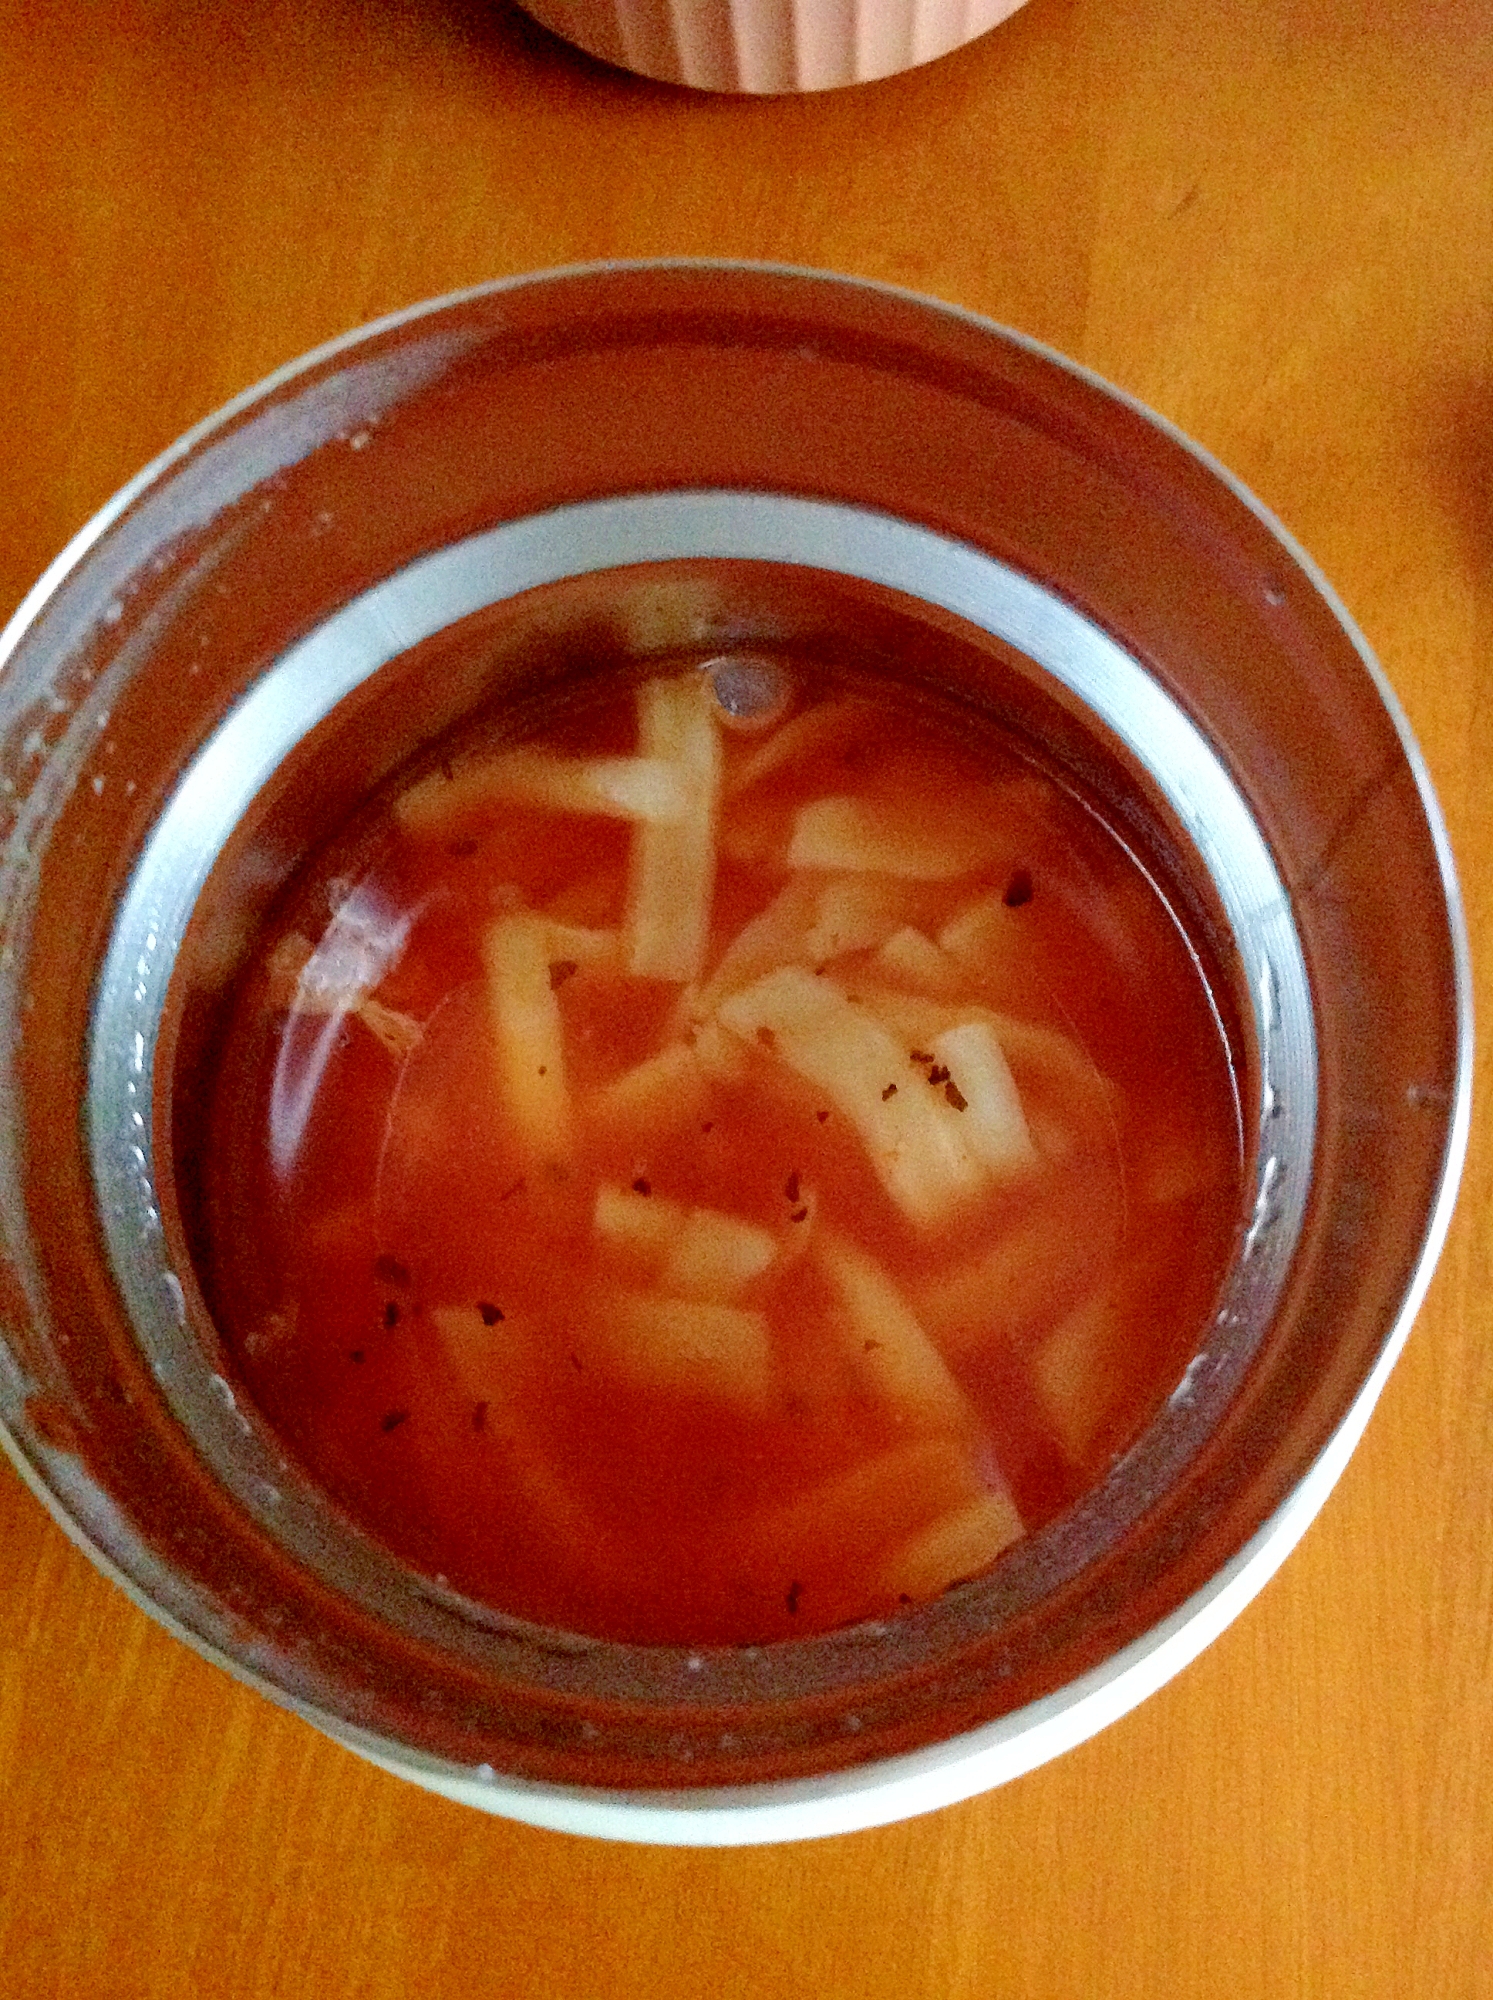 アネッリパスタソーススープ